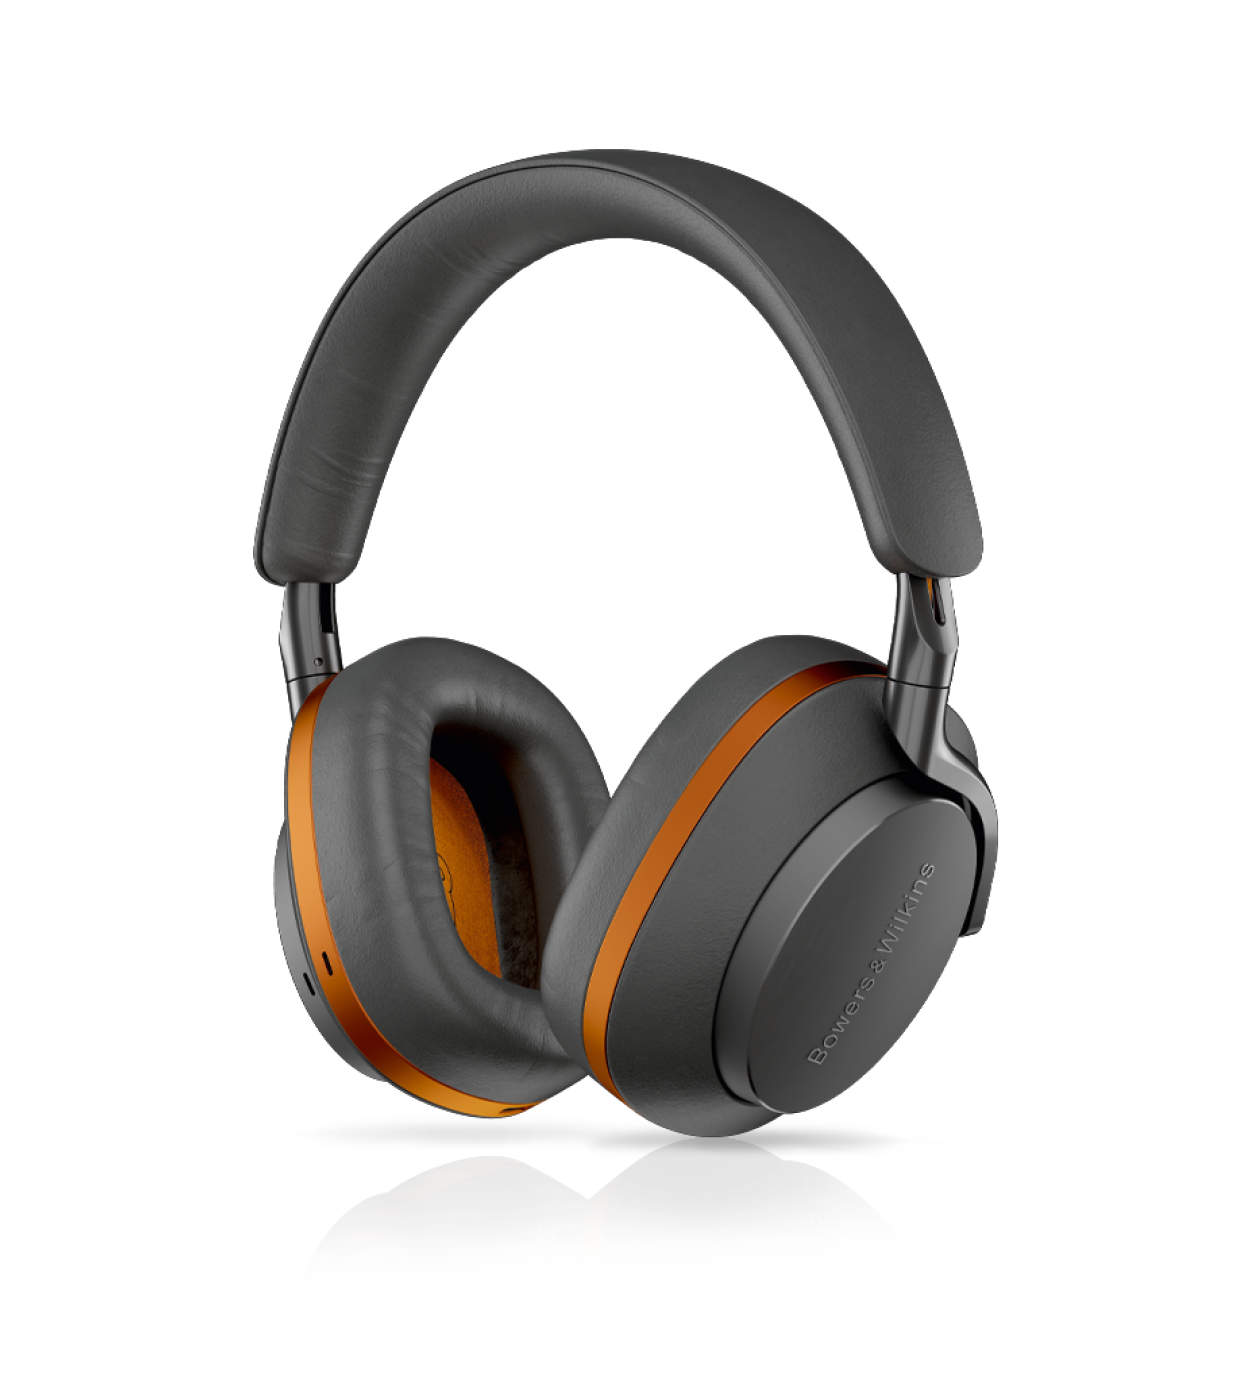 אוזניות Bluetooth אלחוטיות דגם Px8 McLaren Edition מבית Bowers & Wilkins - צבע אפור וכתום פפאיה